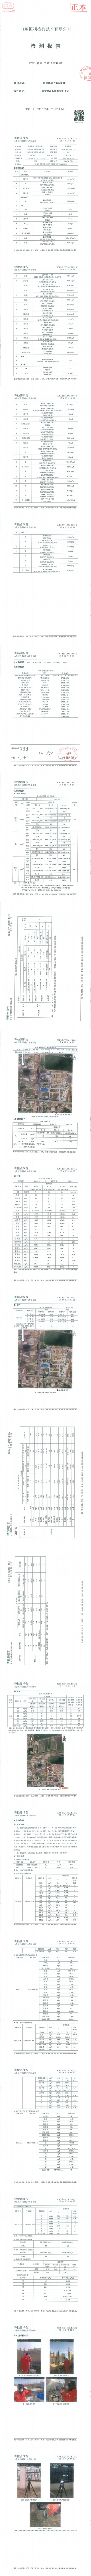 東營華源新能源有限公司第四季度檢測信息公示(圖13)